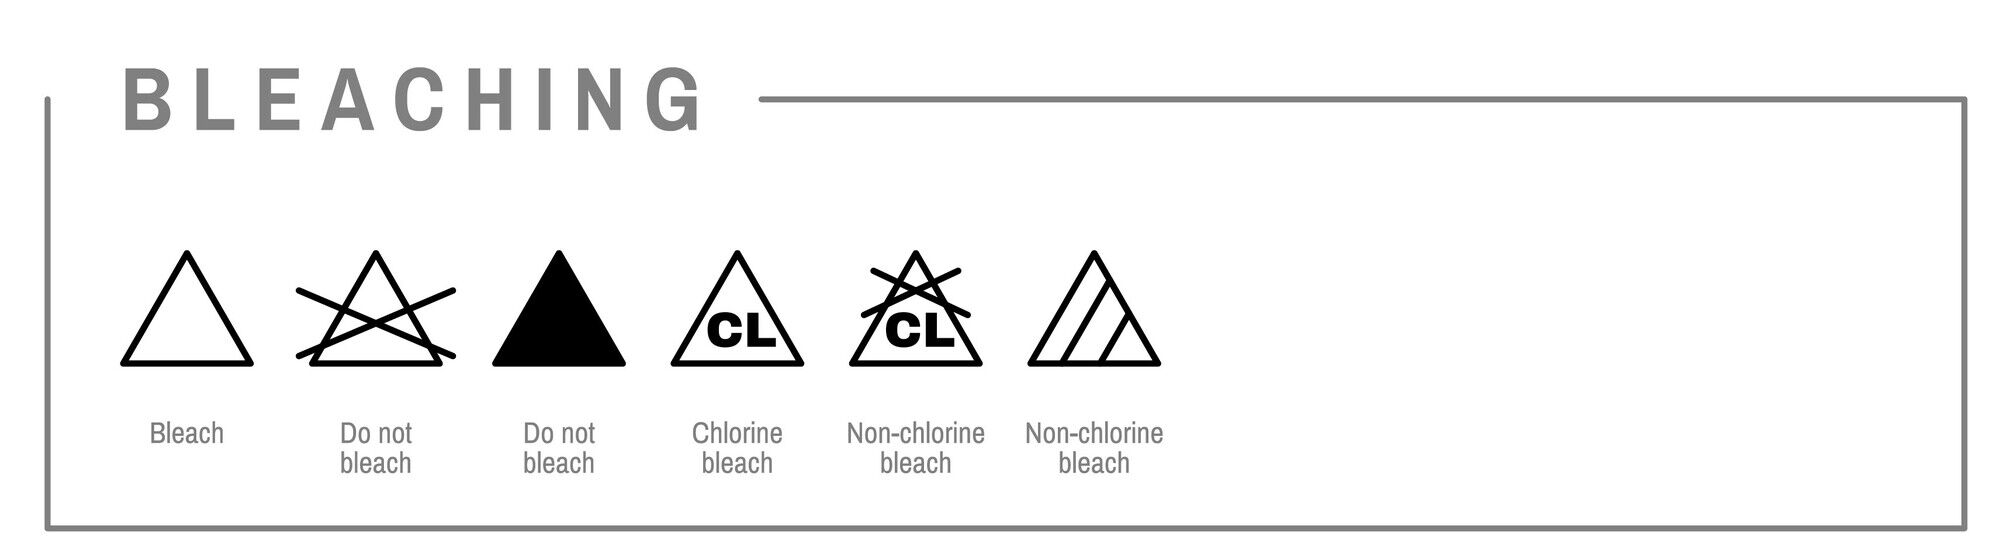 Что означает символ треугольника на этикетке одежды: это должны знать все